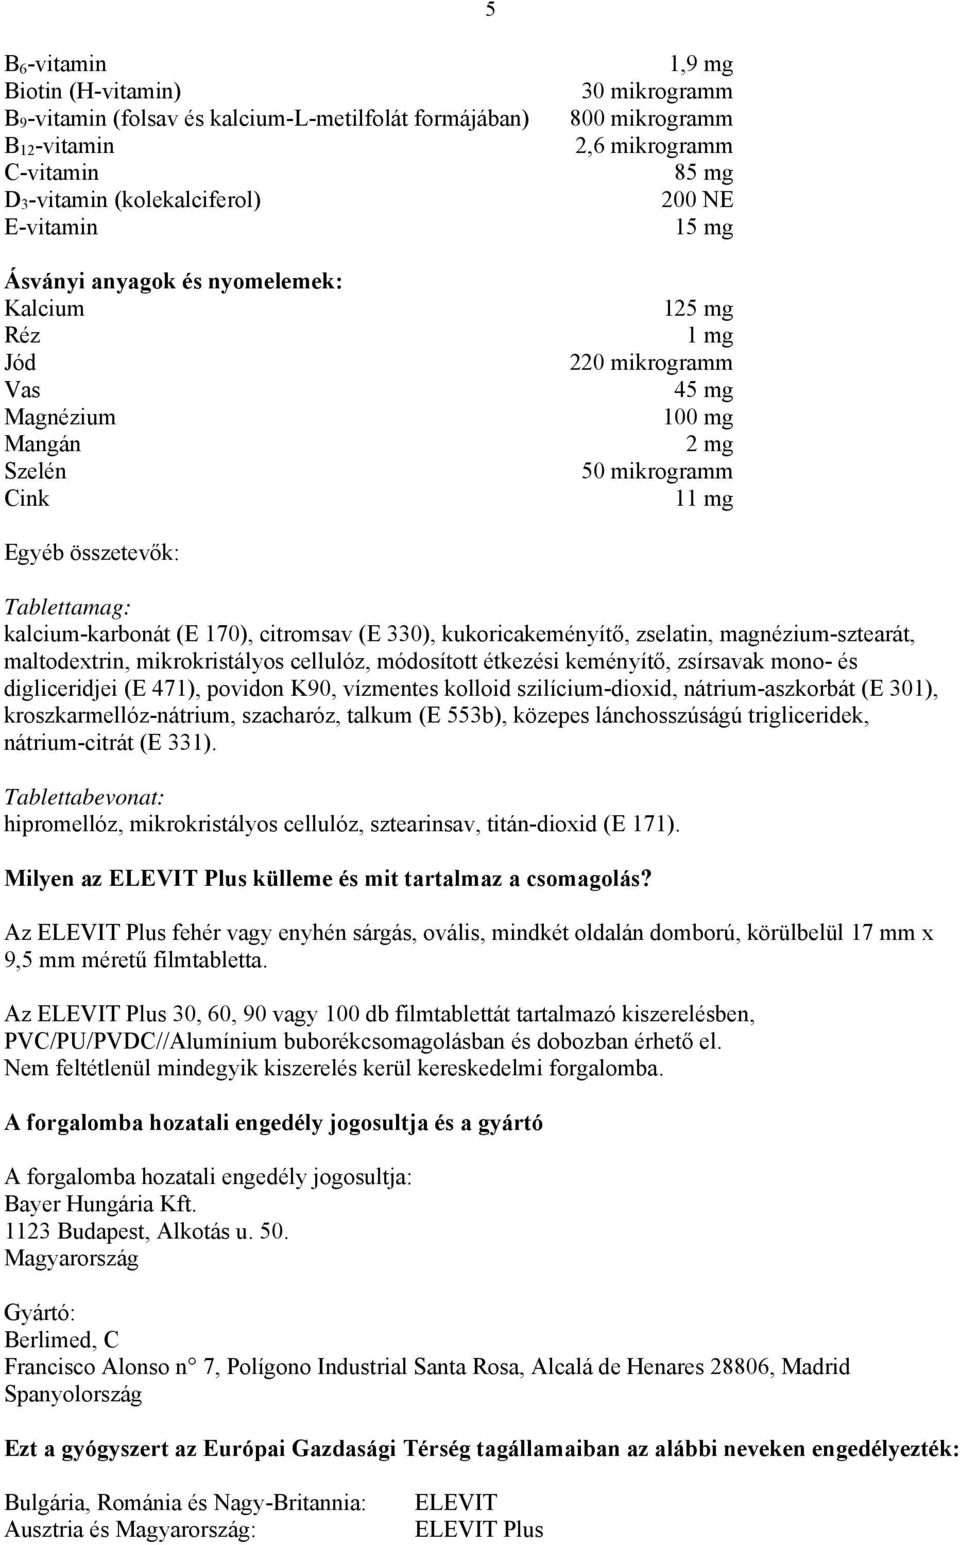 Betegtájékoztató: Információk a beteg számára. ELEVIT Plus filmtabletta 12  vitamin, 8 ásványi anyag - PDF Ingyenes letöltés